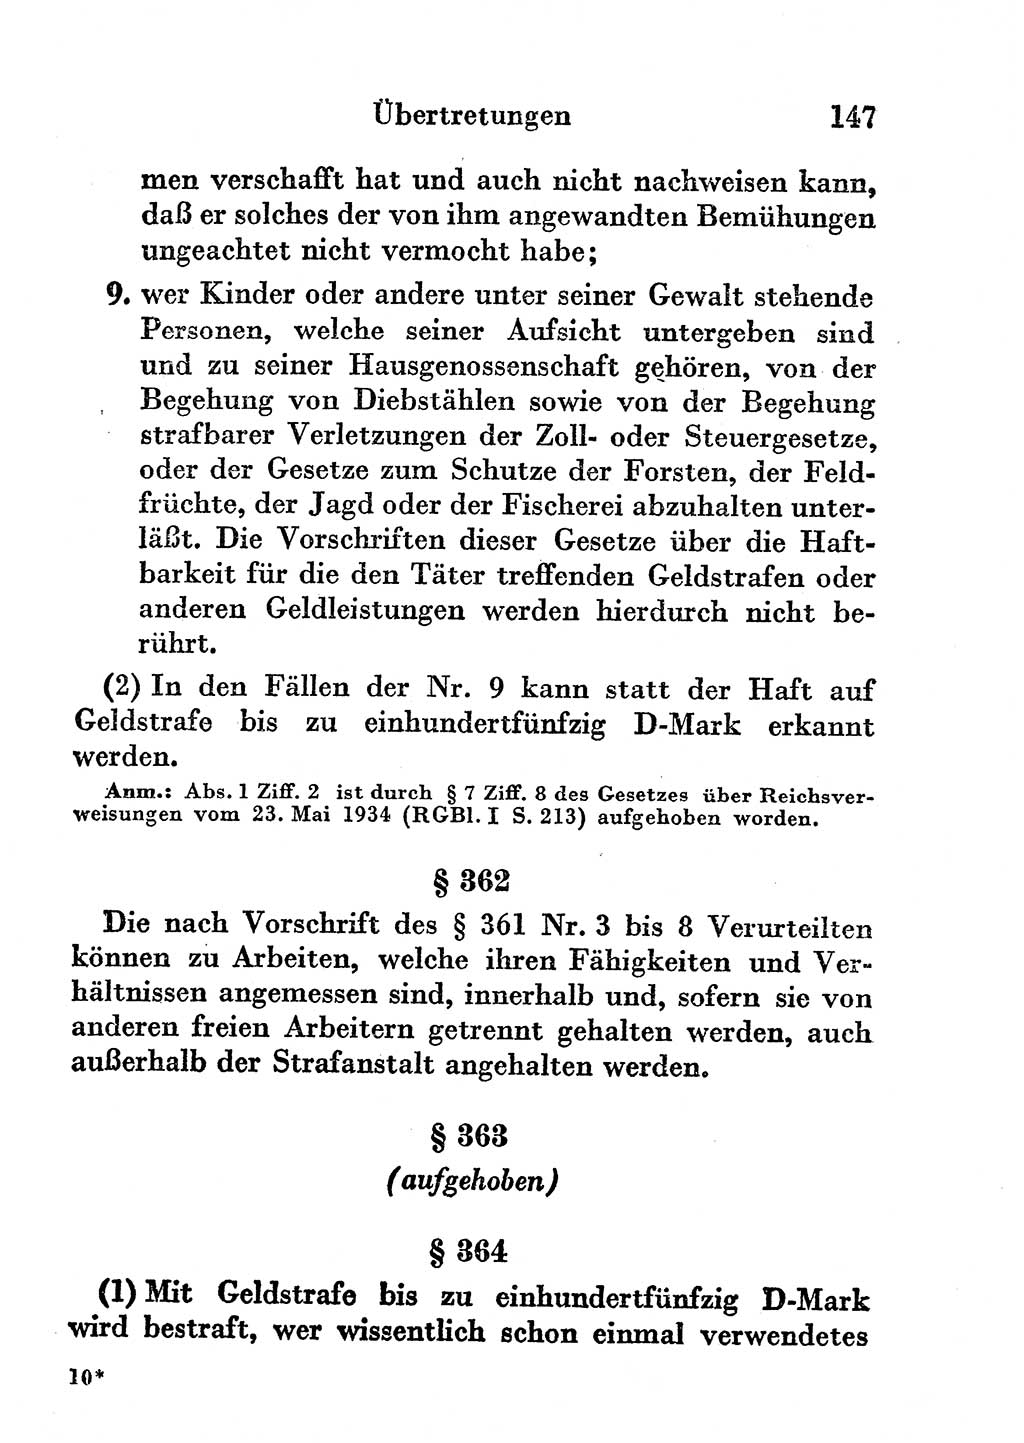 Strafgesetzbuch (StGB) und andere Strafgesetze [Deutsche Demokratische Republik (DDR)] 1956, Seite 147 (StGB Strafges. DDR 1956, S. 147)